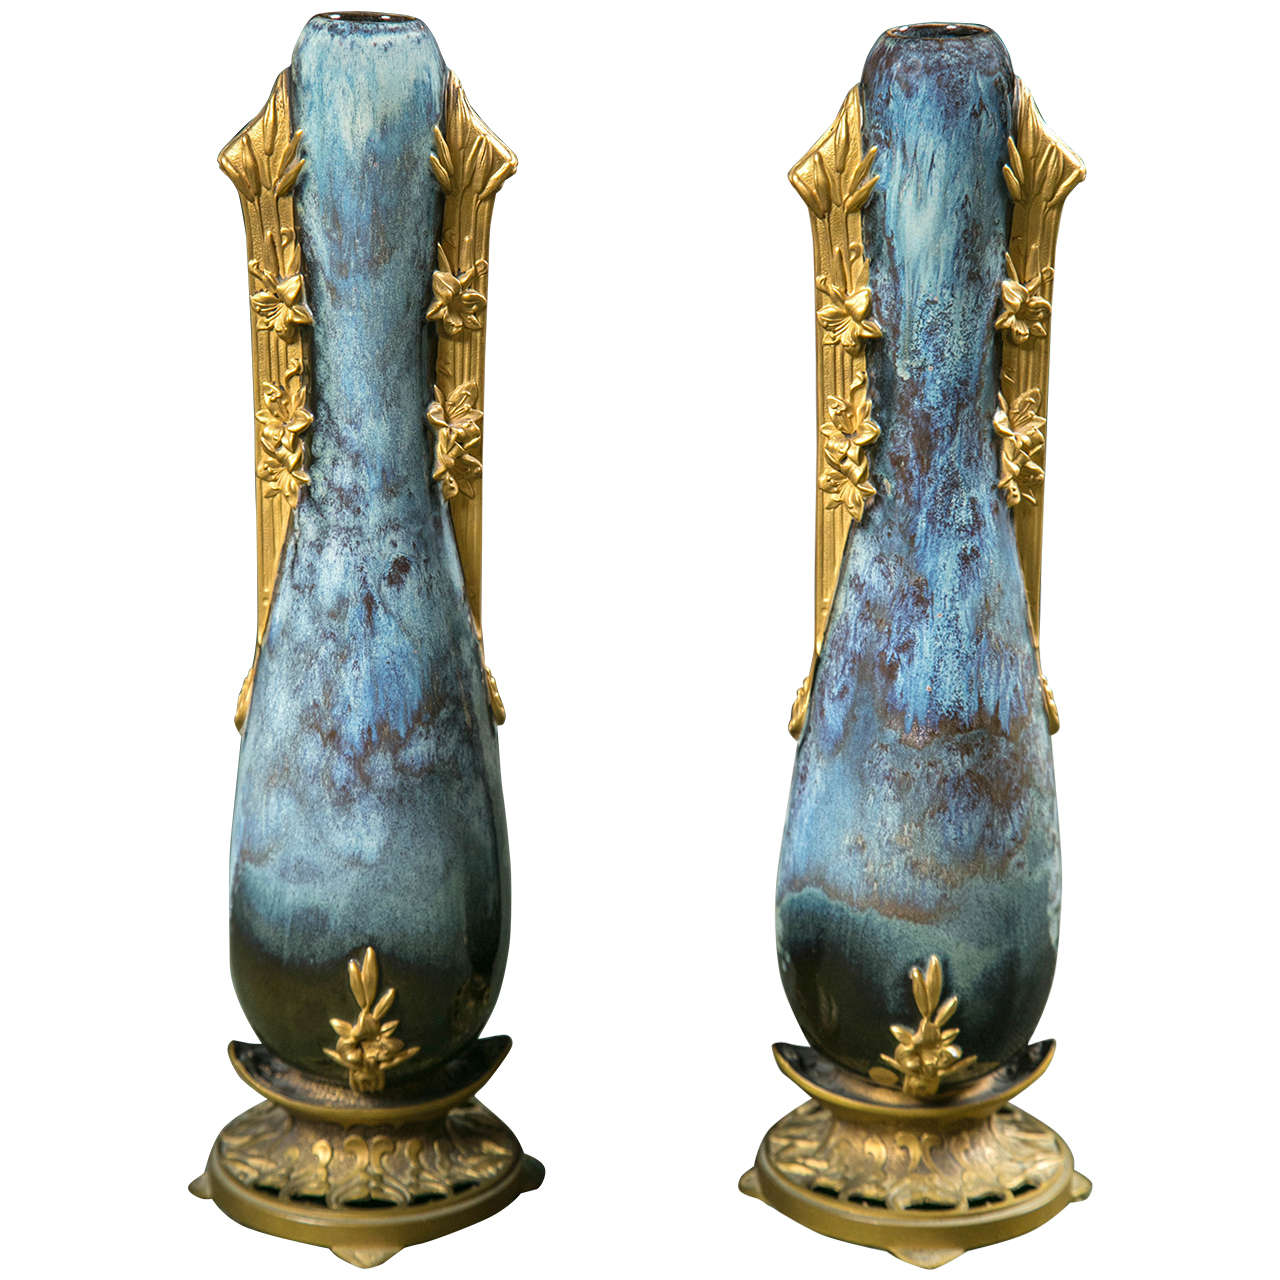 Pair of French Art Nouveau Porcelain Vases by Paul Francoise Louchet For Sale